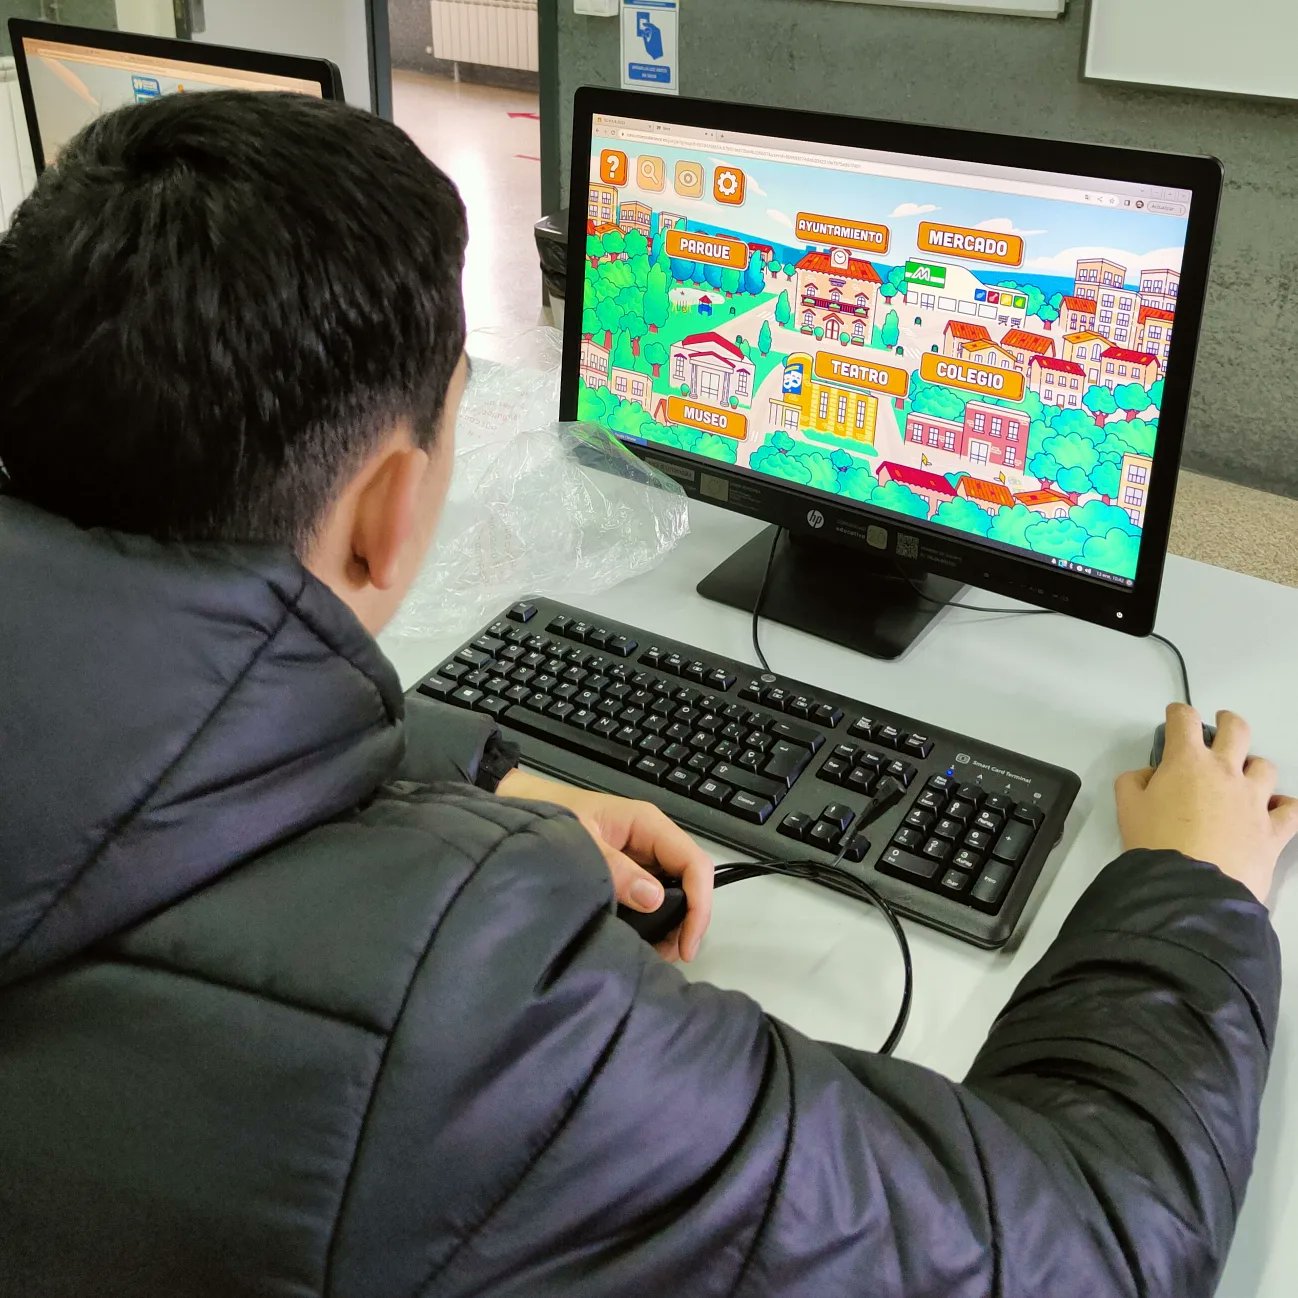 Escolar jugando a ONCITY en un ordenador. En el videojuego aparece una localidad y hay destacados varios sitios que se pueden visitar: parque, museo, teatro, colegio, mercado y ayuntamiento.